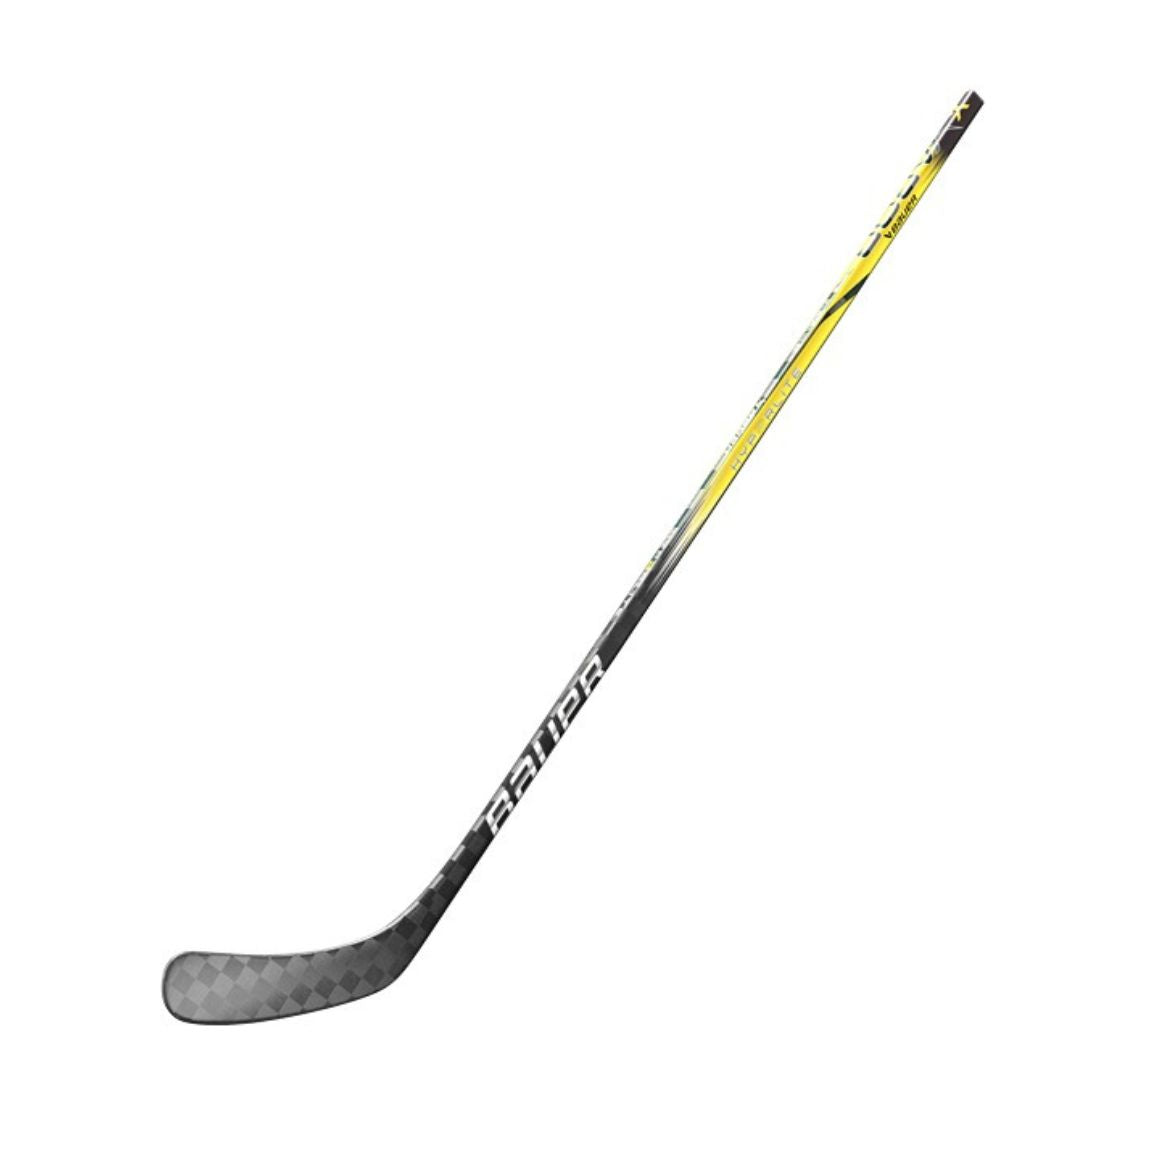 Bauer Vapor Hyperlite 2 Hockey Stick (YELLOW) - Junior